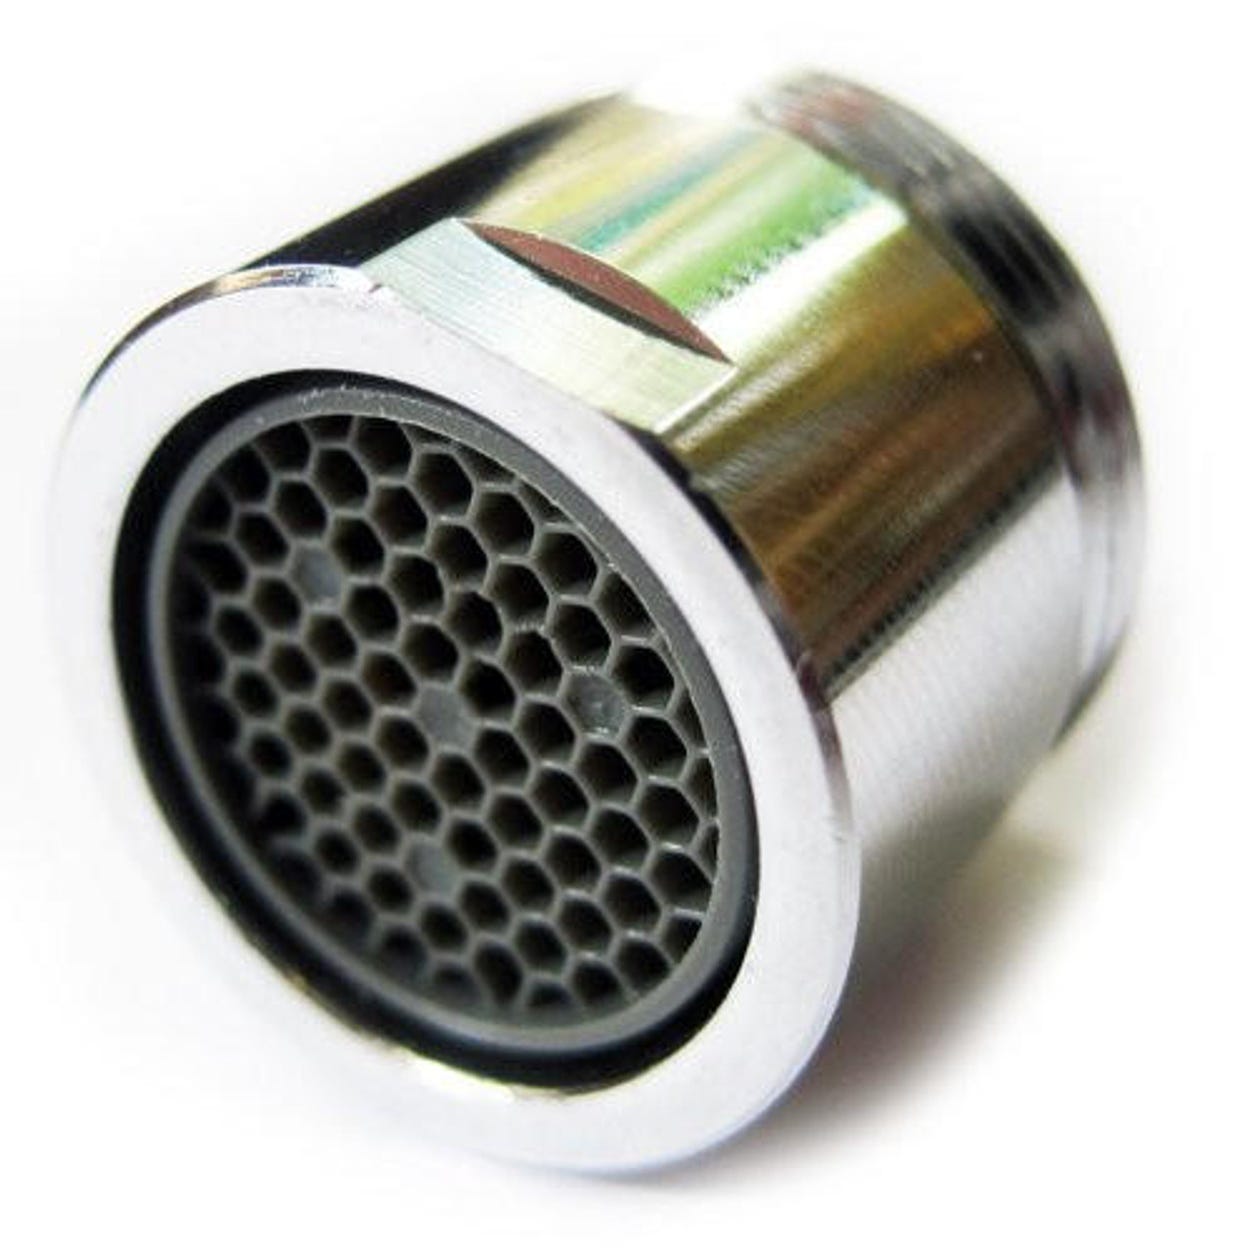 Aérateur avec tuyau flexible pour robinet à filetage mâle de 24 mm